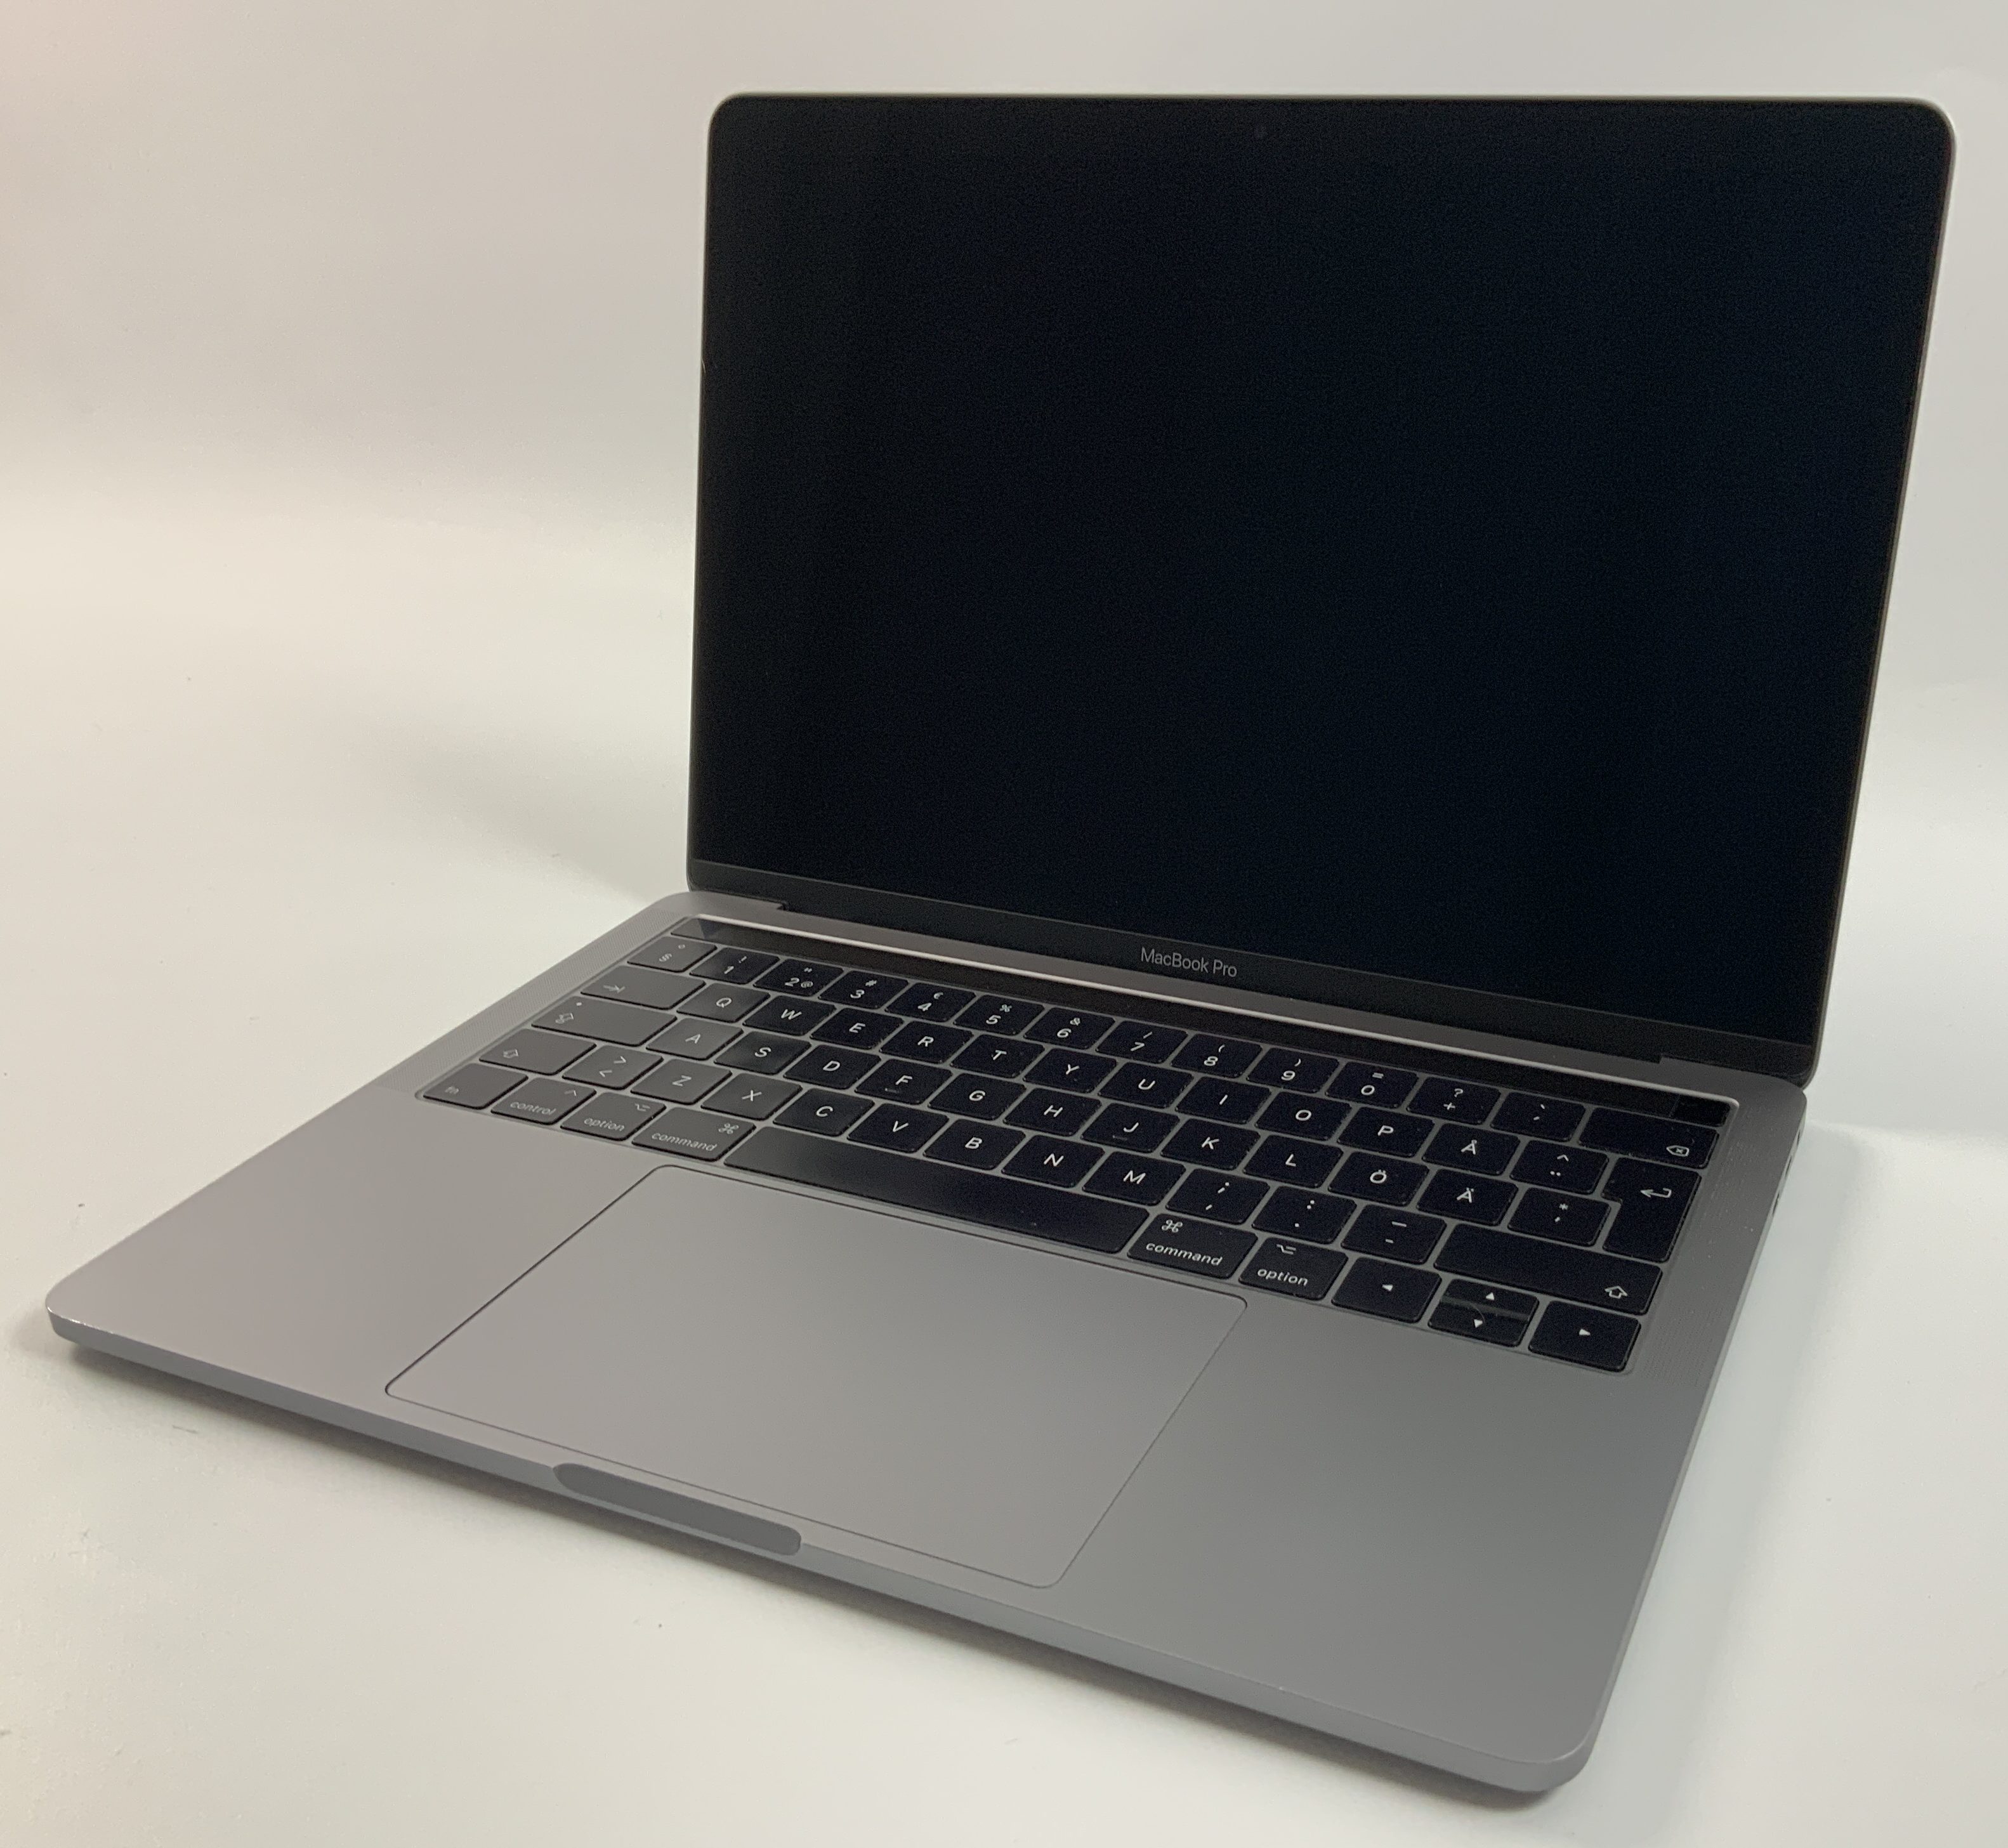 MacBook Pro 13" 4TBT Mid 2017 (Intel Core i5 3.1 GHz 8 GB RAM 256 GB SSD), Space Gray, Intel Core i5 3.1 GHz, 8 GB RAM, 256 GB SSD, bild 1